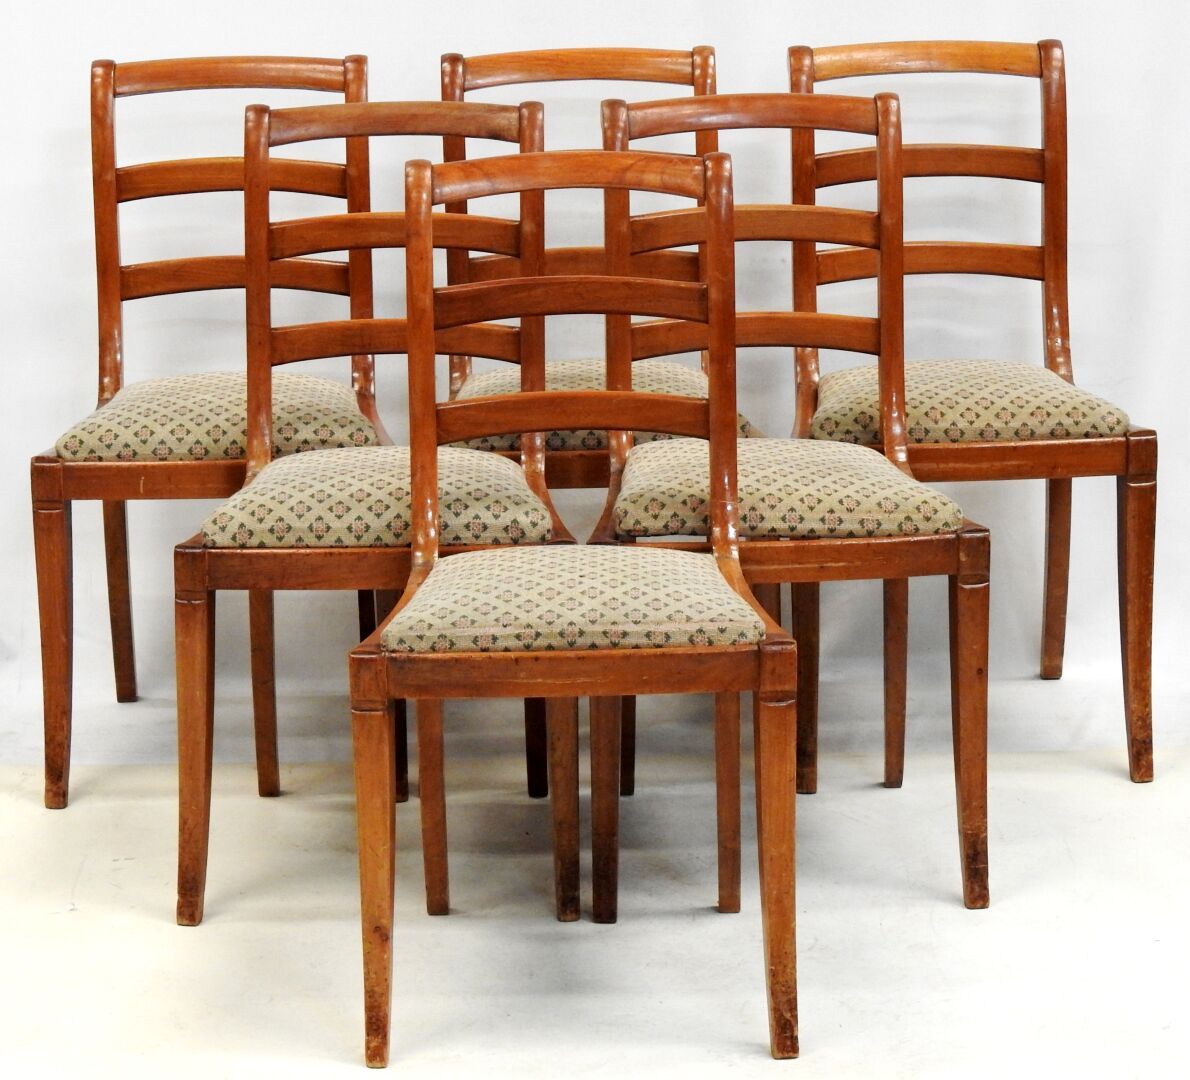 Null 六张天然木质椅子套组，带镂空椅背

磨损和撕裂。